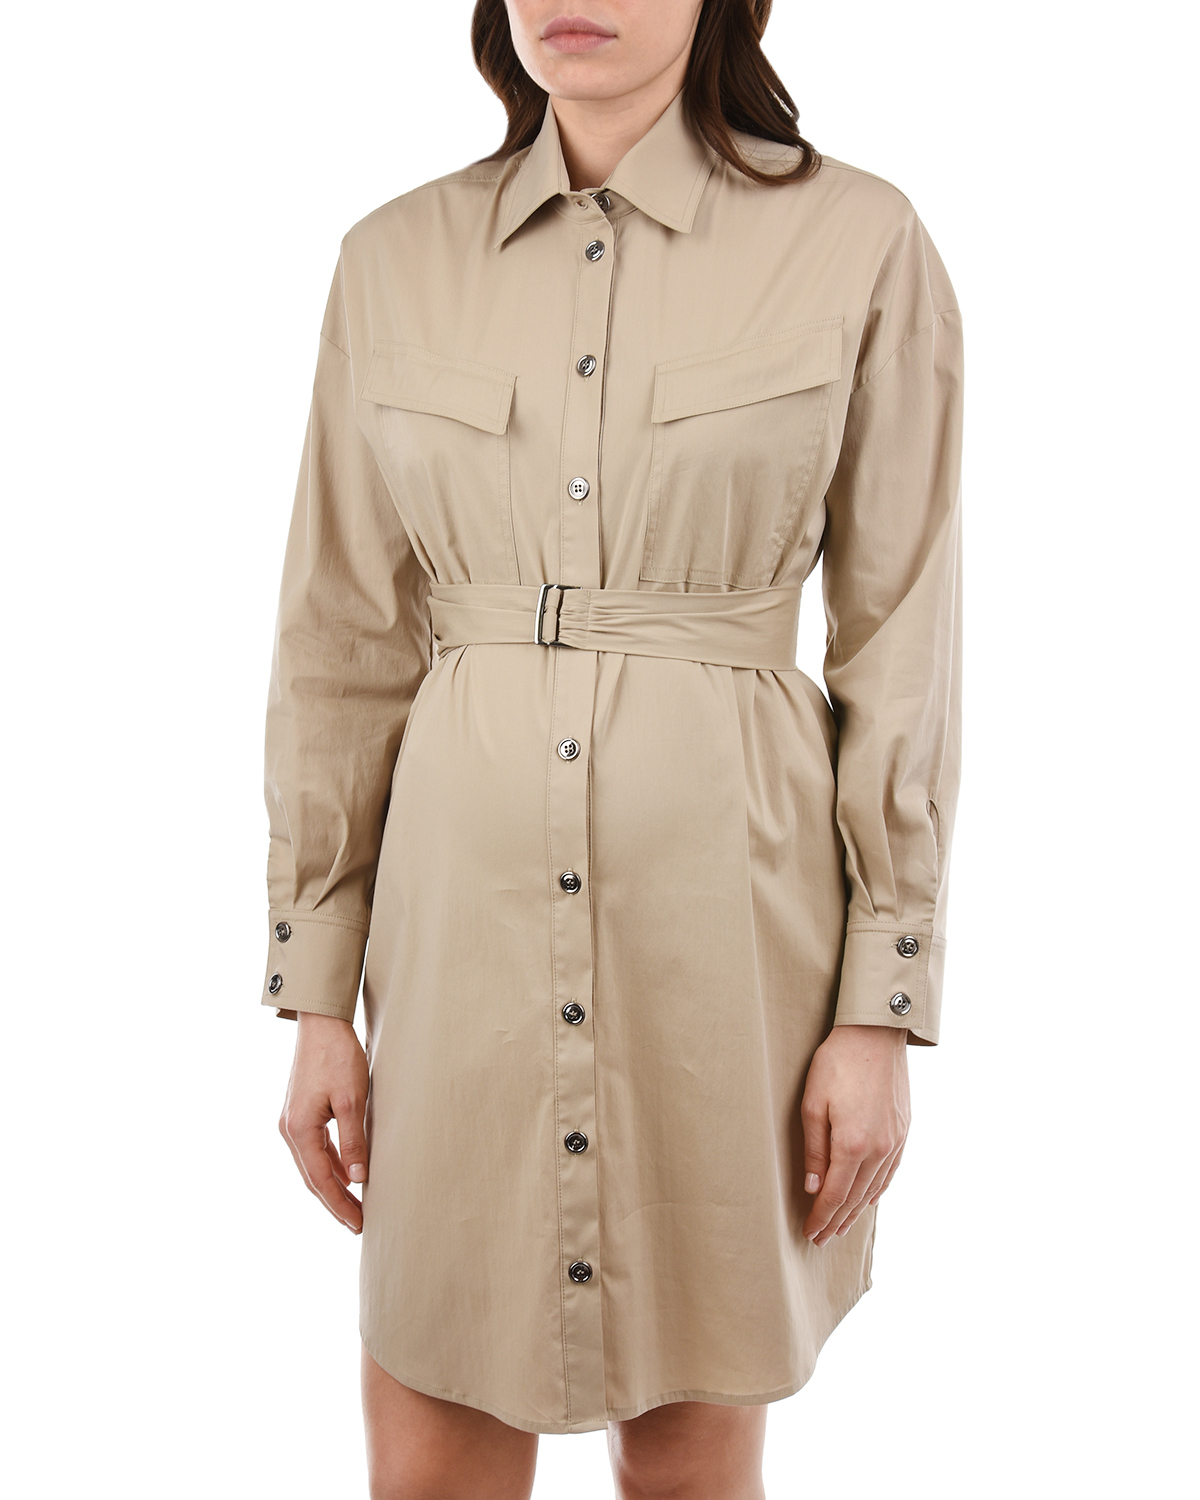 Бежевое платье-рубашка OLIMPIA Pietro Brunelli, размер 40, цвет бежевый - фото 7